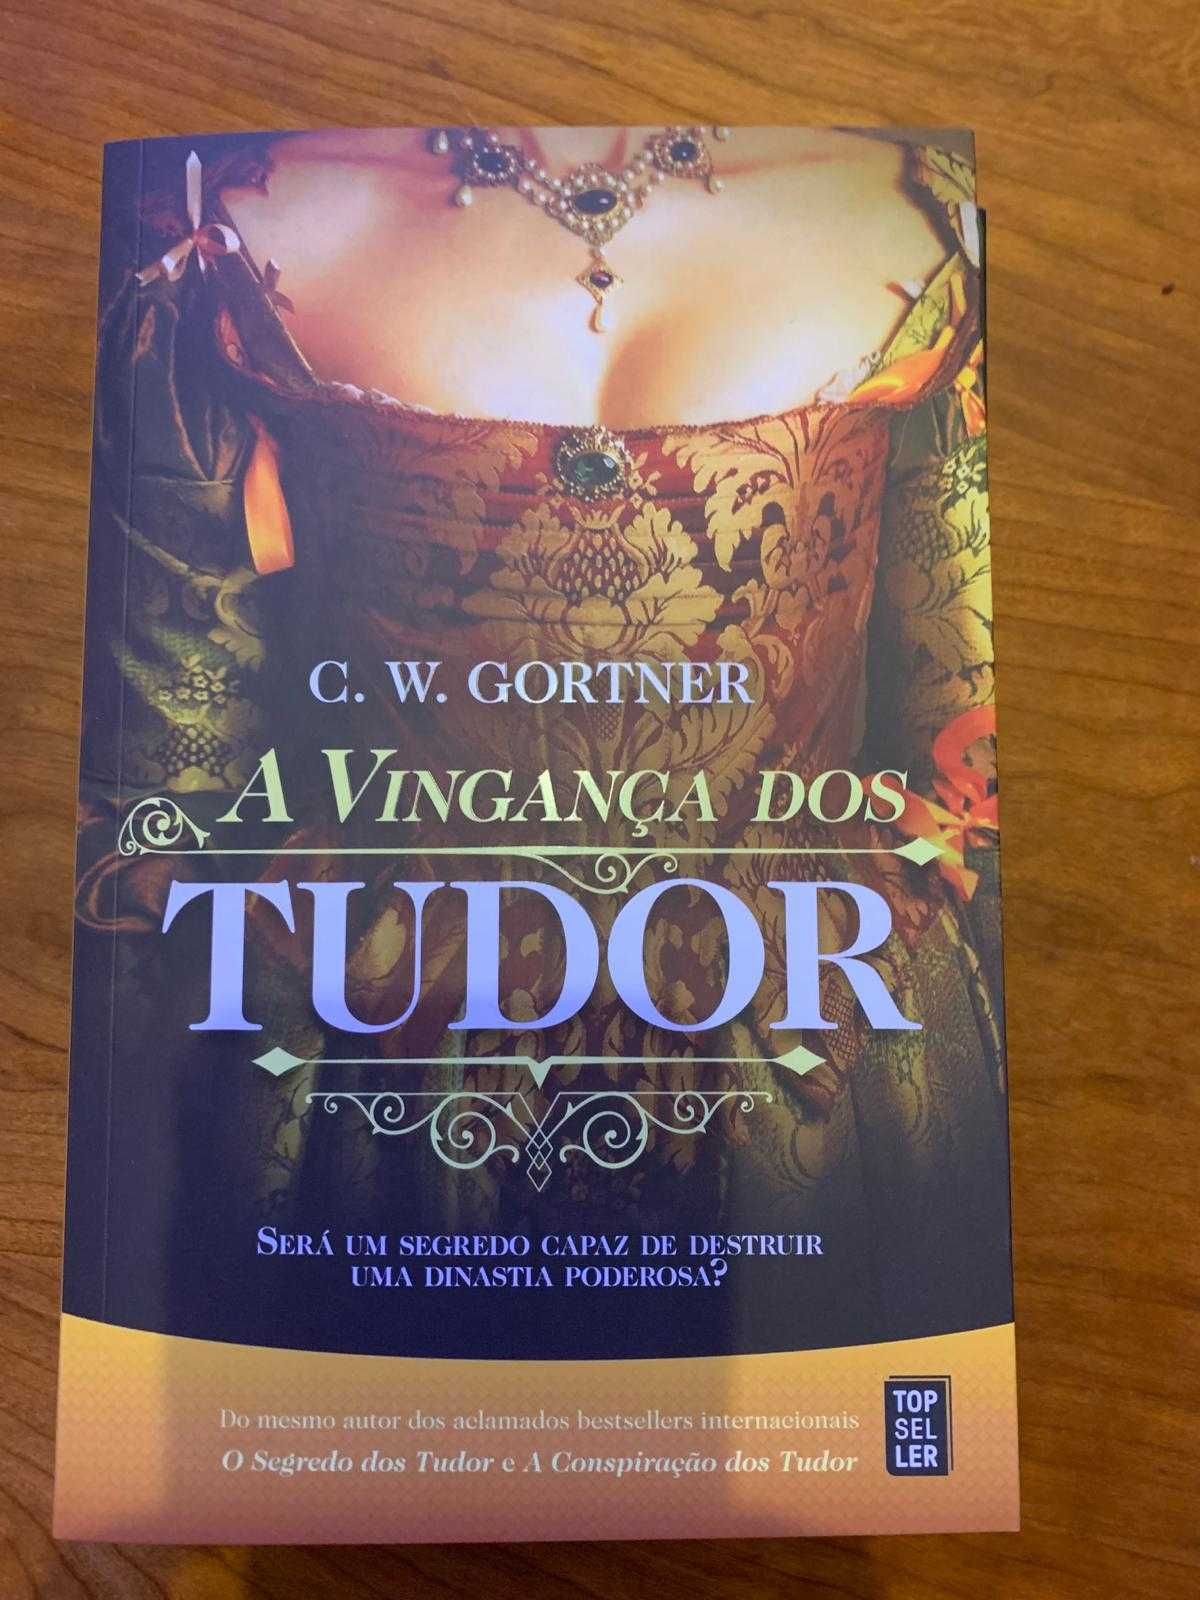 A Vingança dos Tudor
de C. W. Gortner